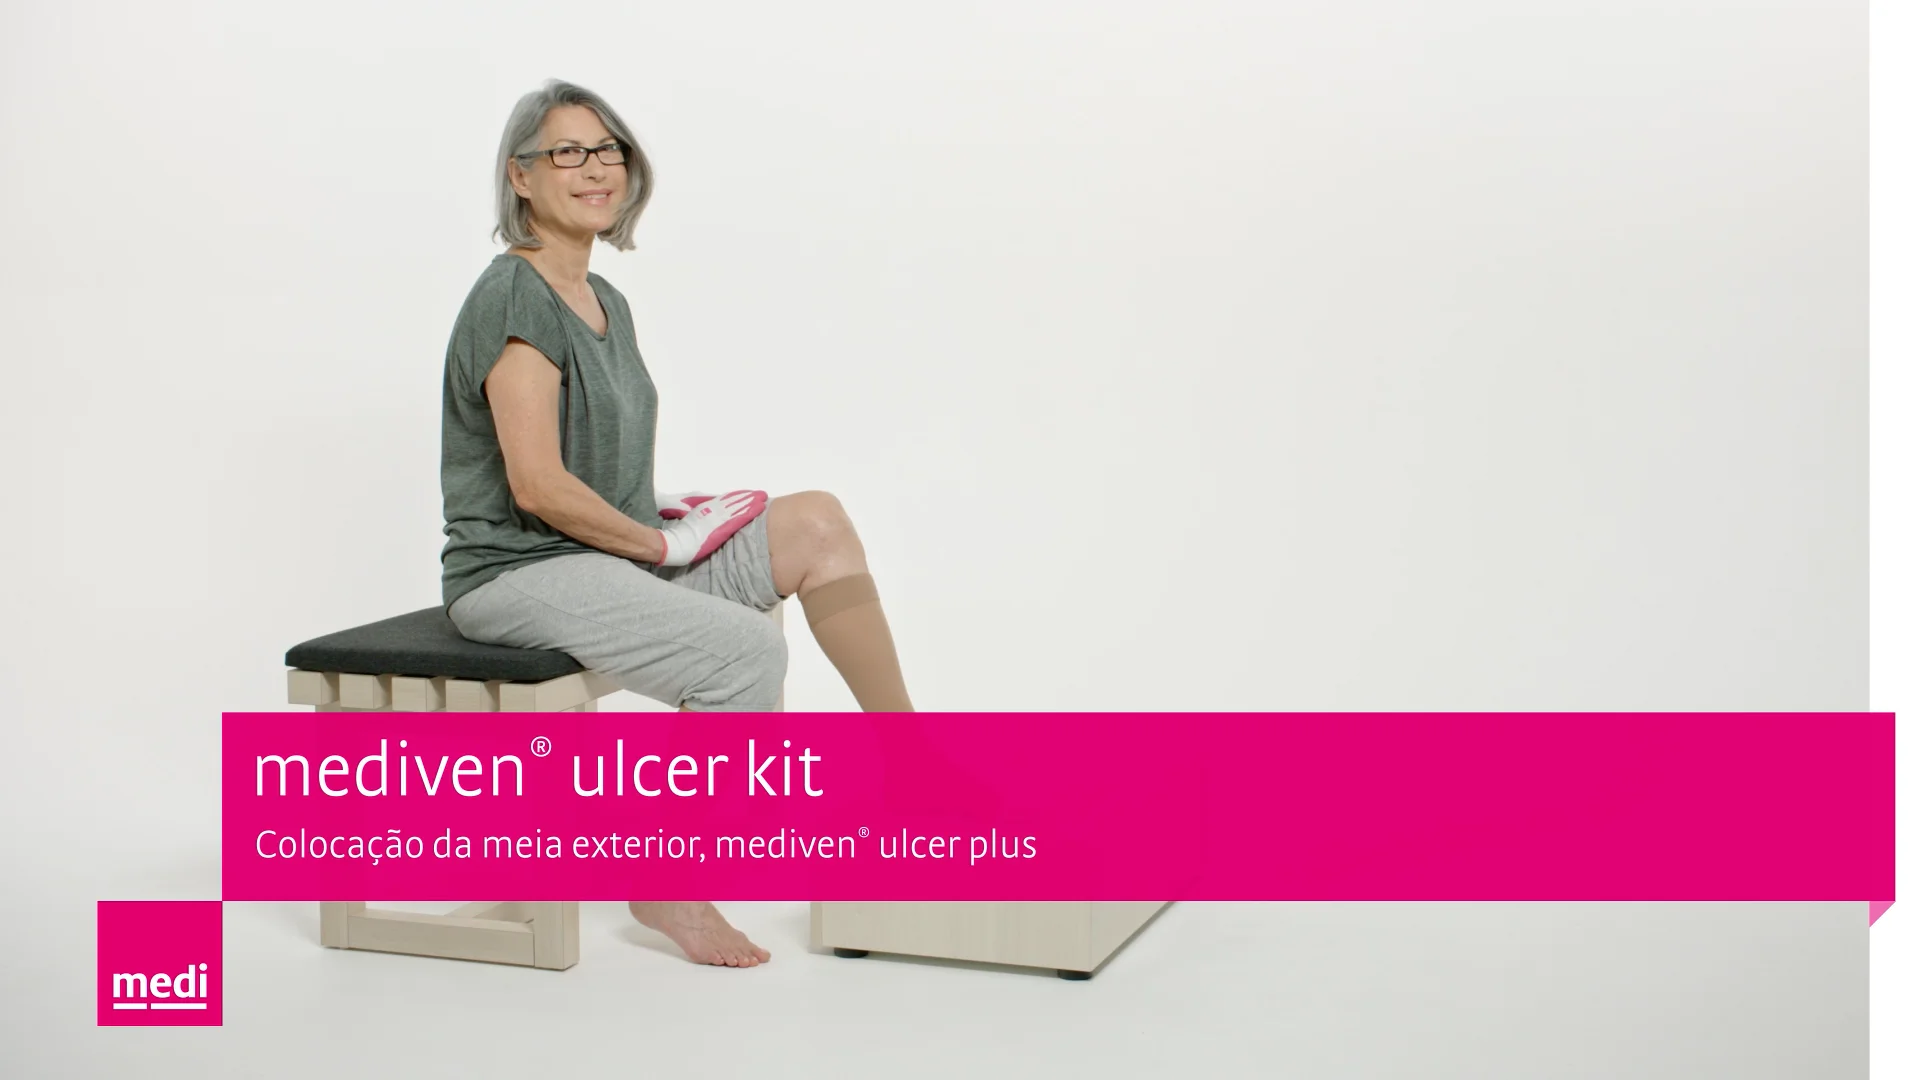 mediven® ulcer kit – Colocação da meia exterior, mediven® ulcer